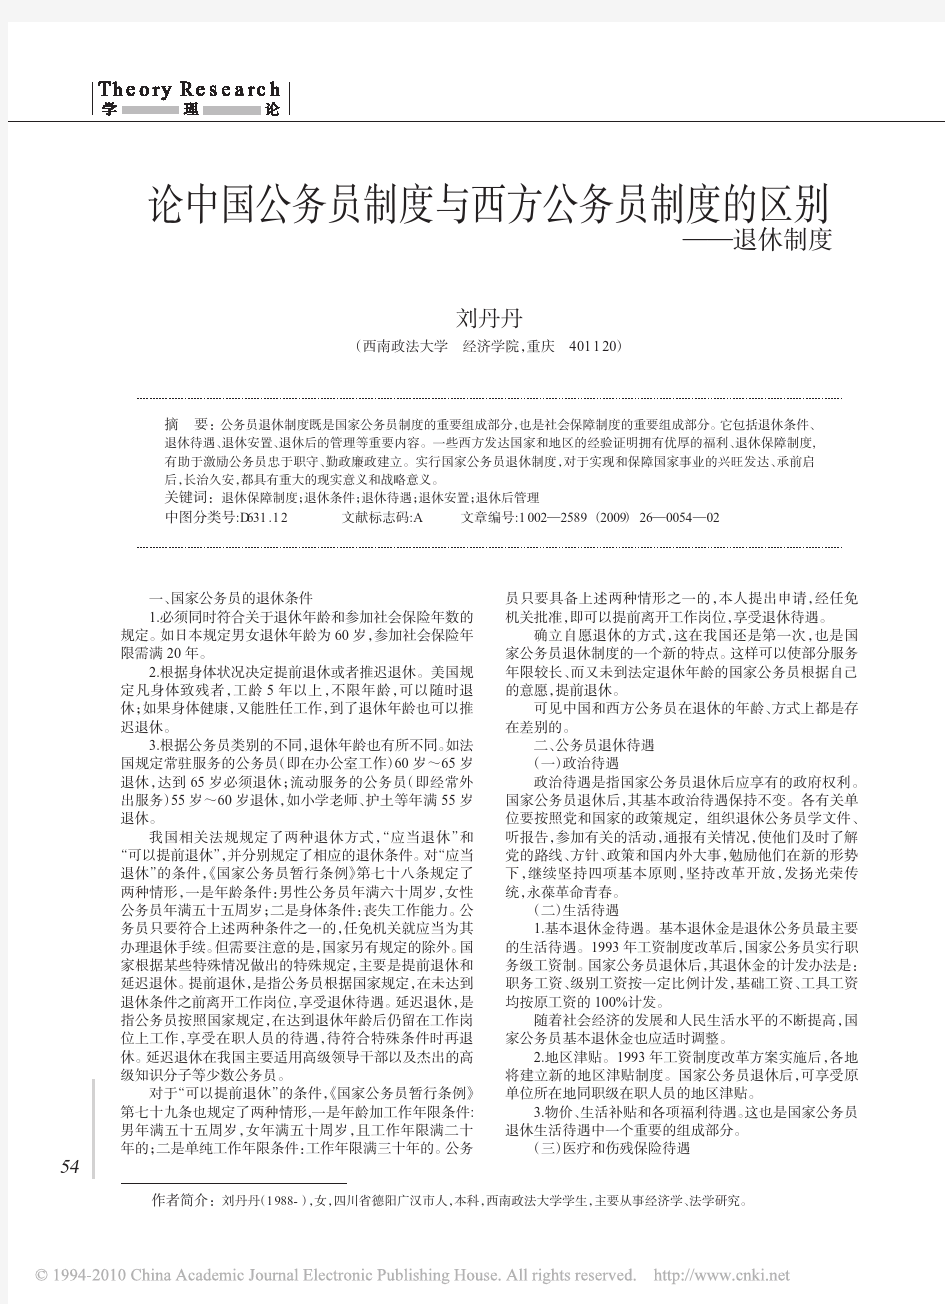 论中国公务员制度与西方公务员制度的区别_退休制度